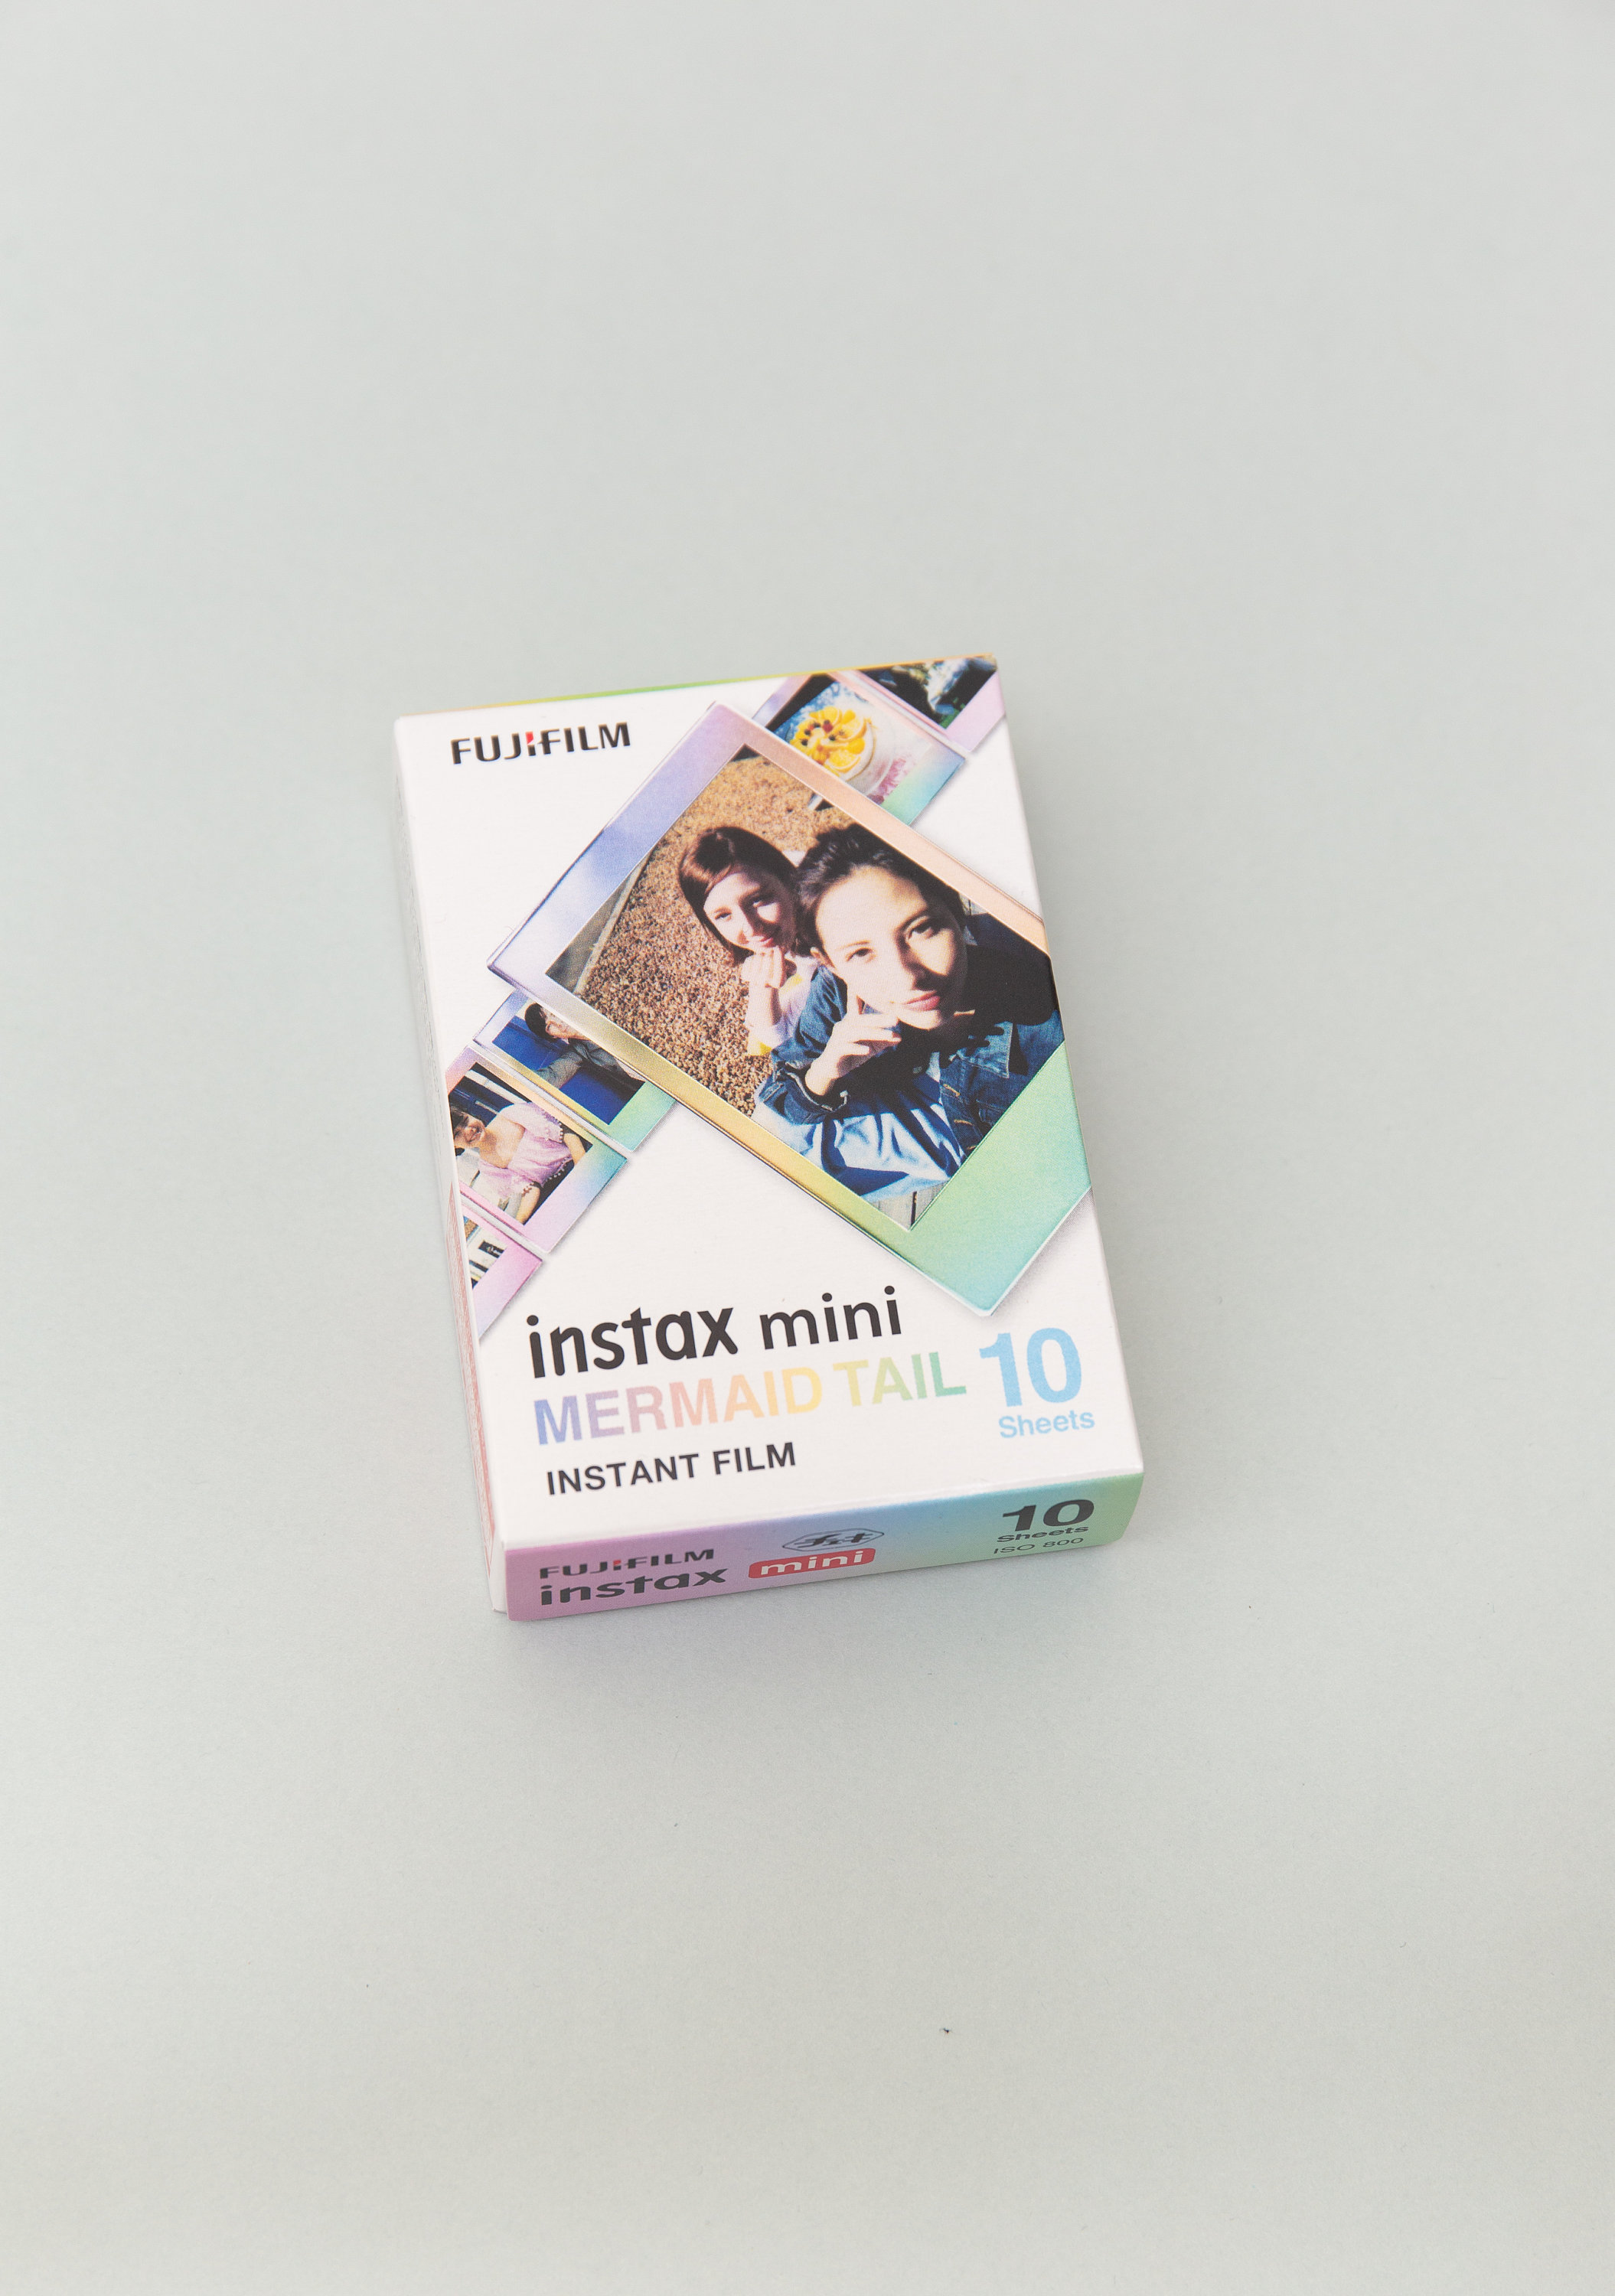 Fujifilm Instax Mini Film Monochrome Film instantané noir et blanc 10  feuilles. Pour Instax Mini 11, 40, 8, 7s, 25, 50s, 70, Neo 90, Evo. -   France